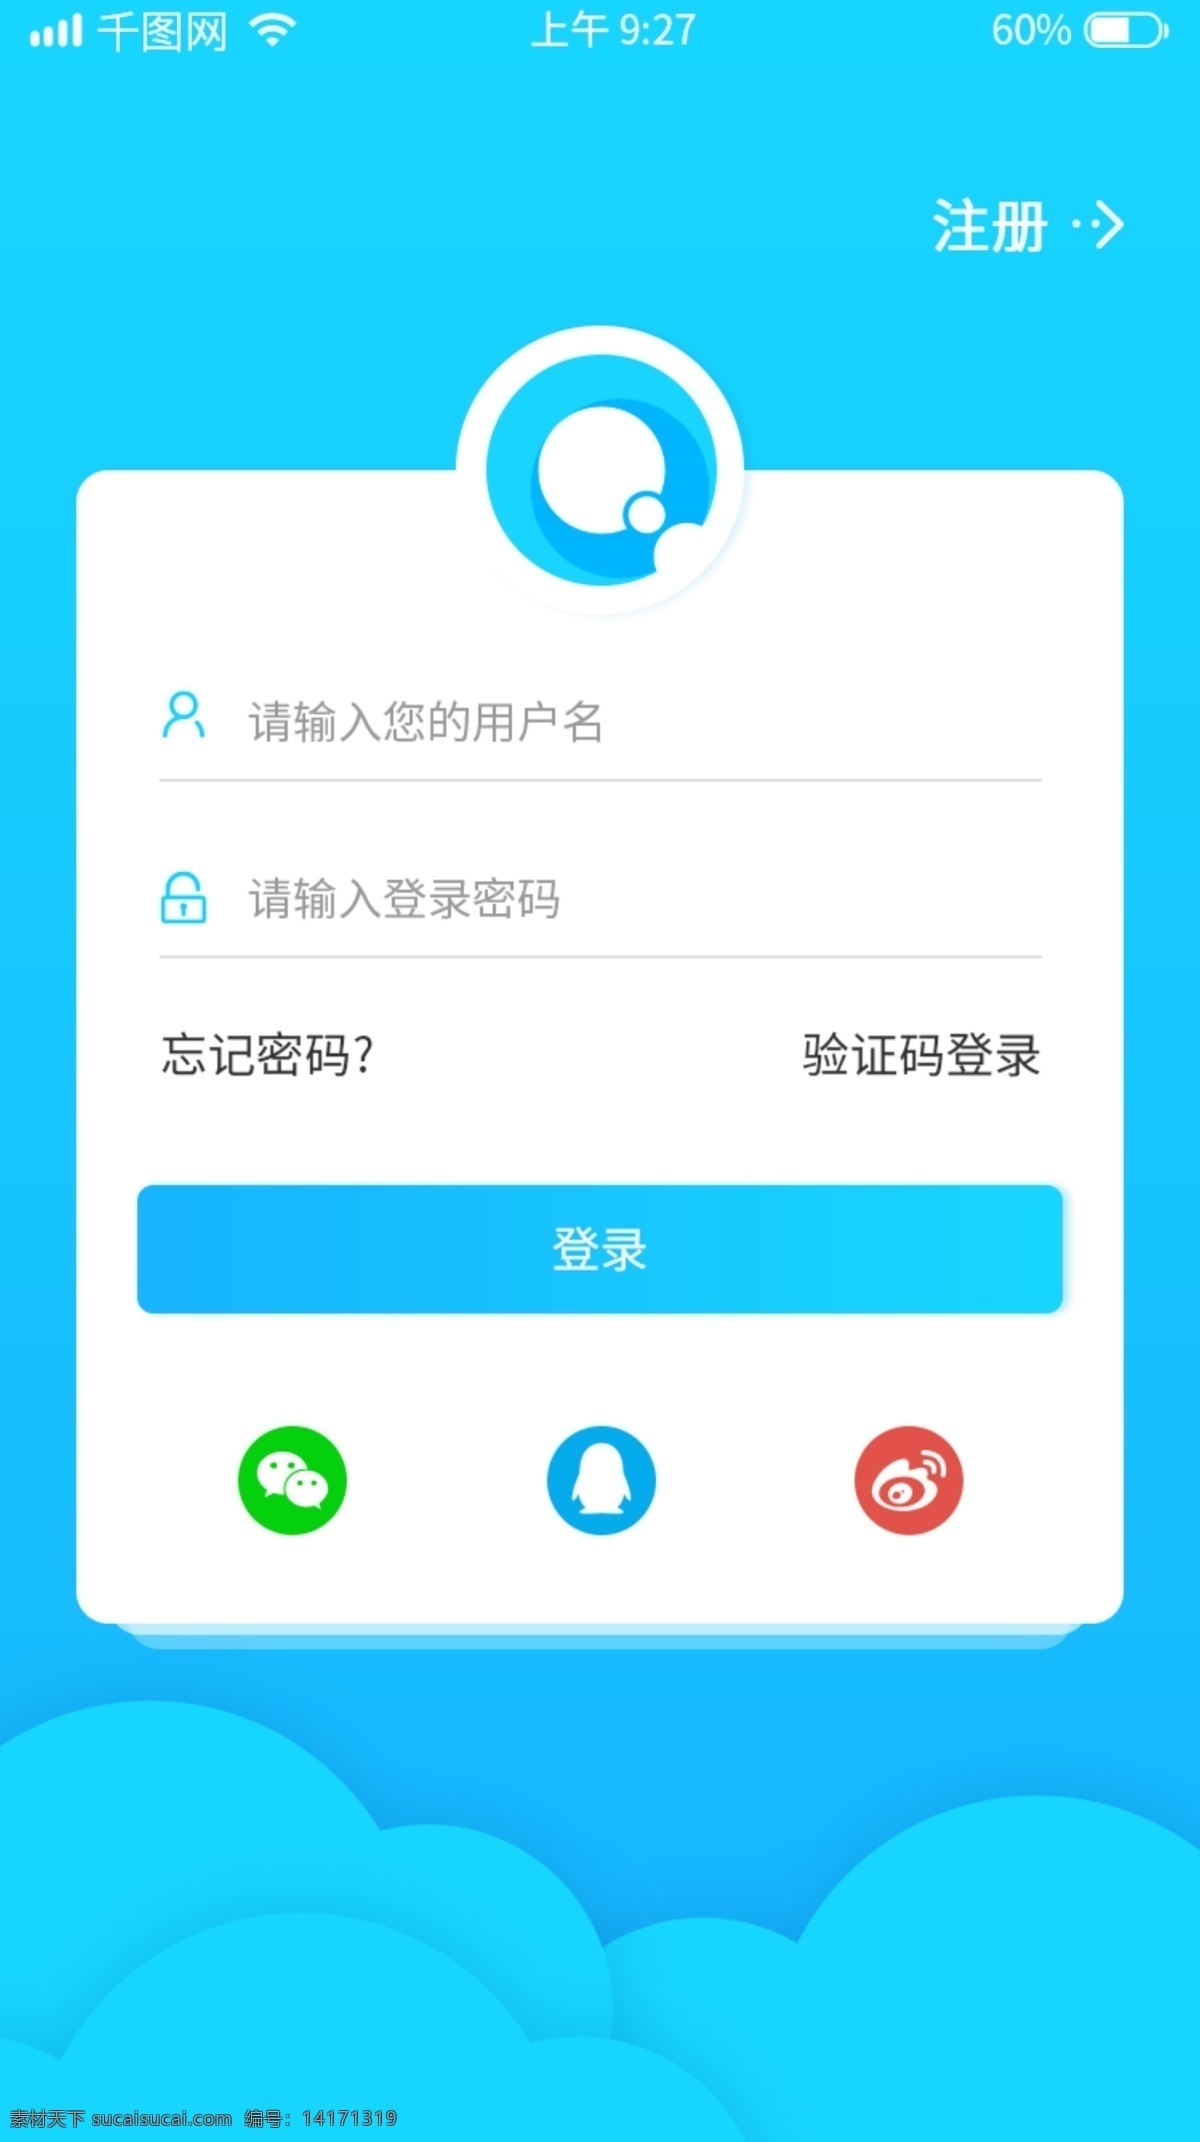 理财 app 登录 注册 简约 蓝色